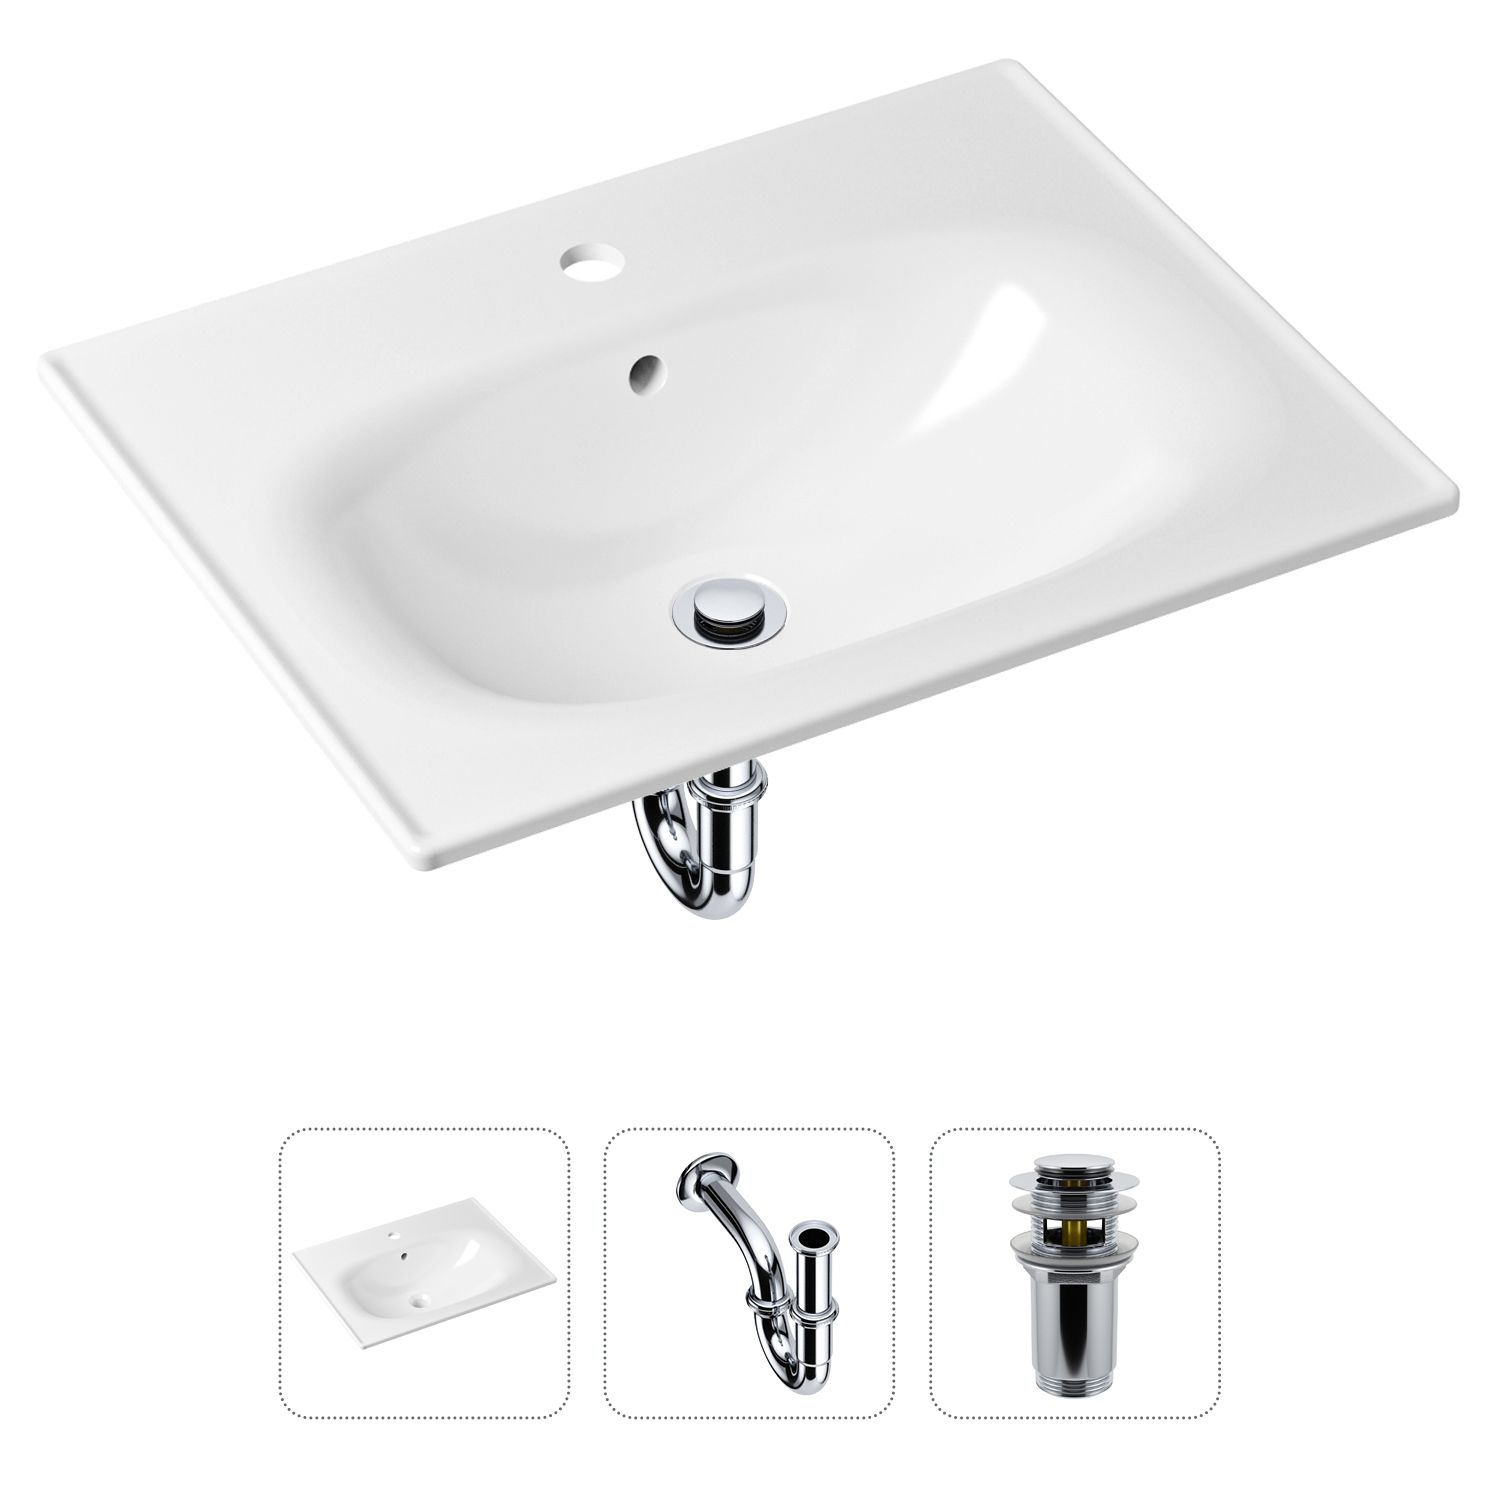 Комплект 3 в 1 Lavinia Boho Bathroom Sink 21520433: раковина 60 см, сифон, донный клапан